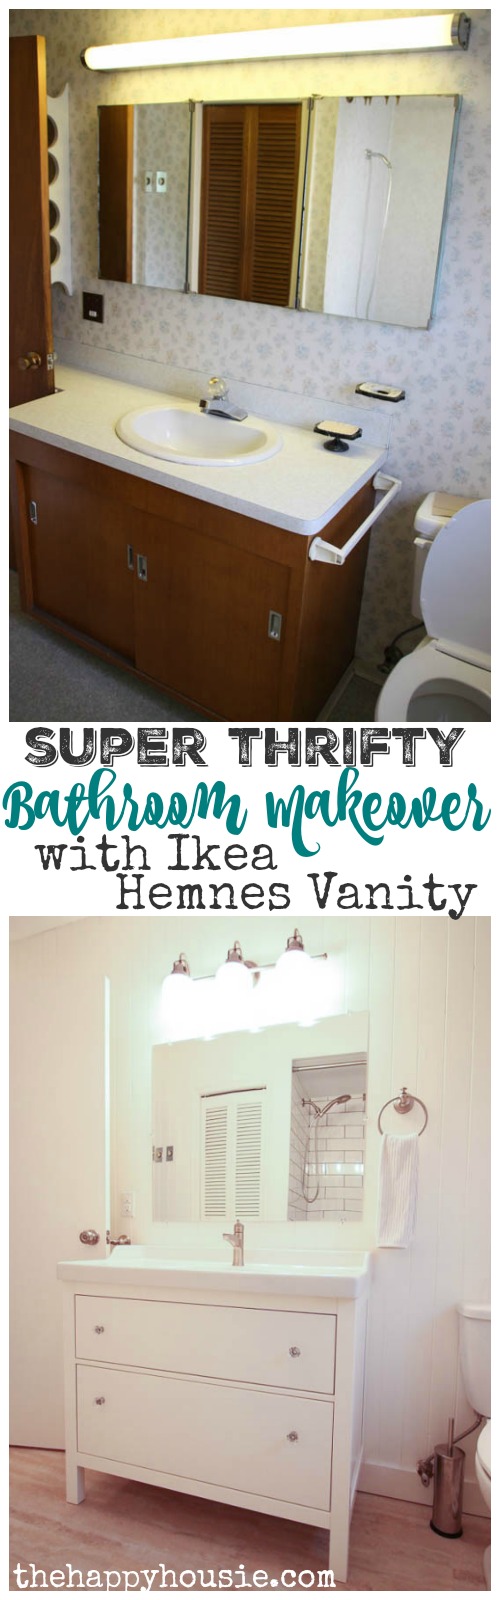 An Ikea Hemnes Vanity, Hemnes Bathroom Vanity